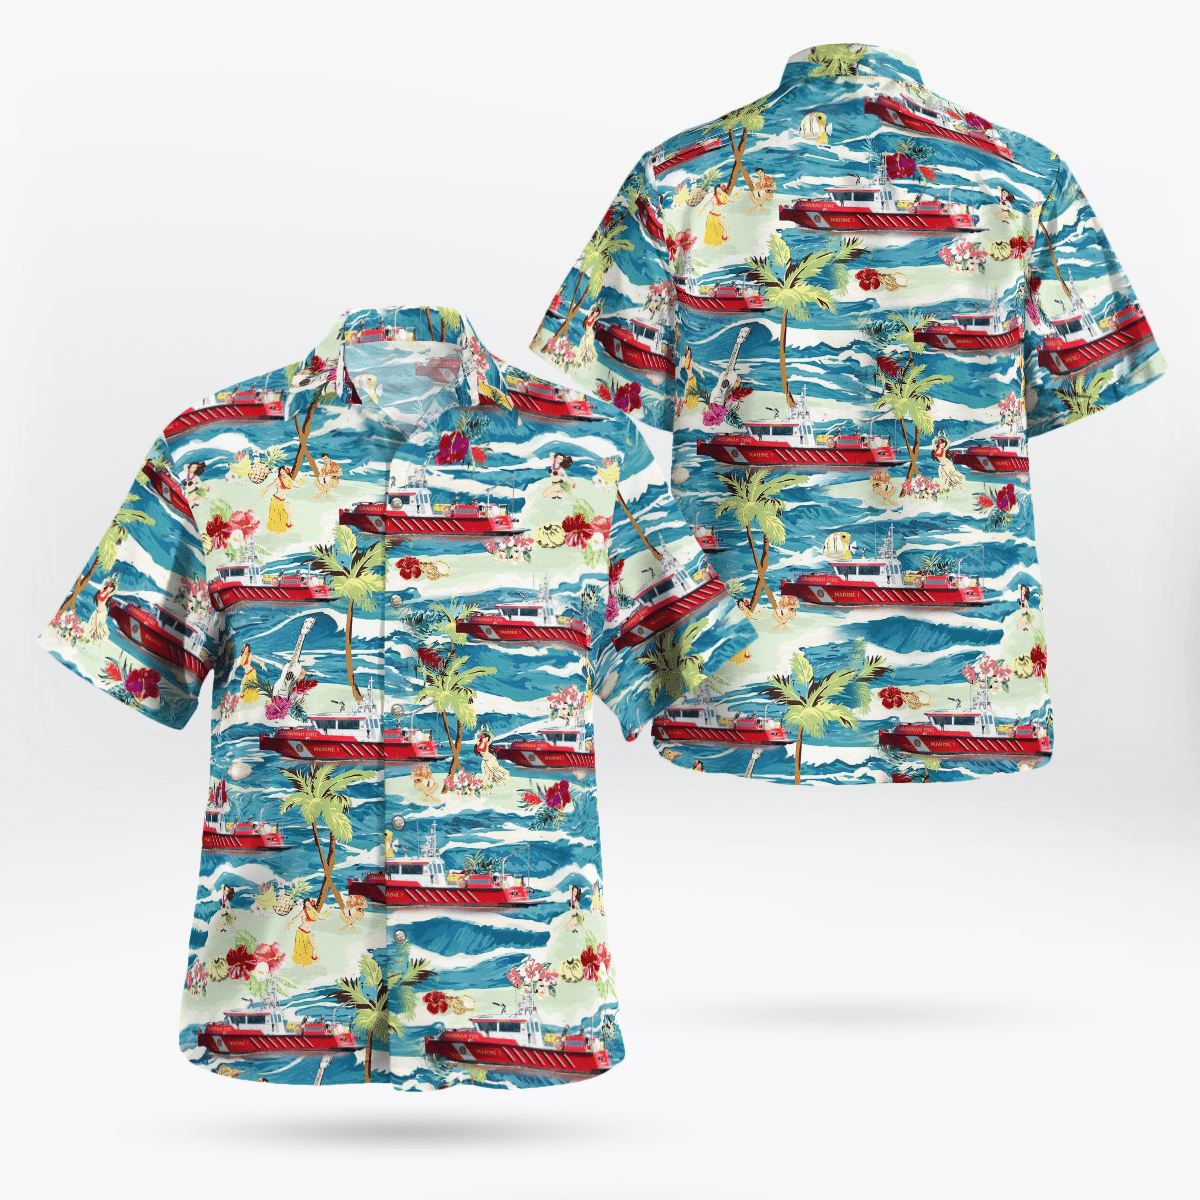 You won't regret buying these Aloha Shirt 29